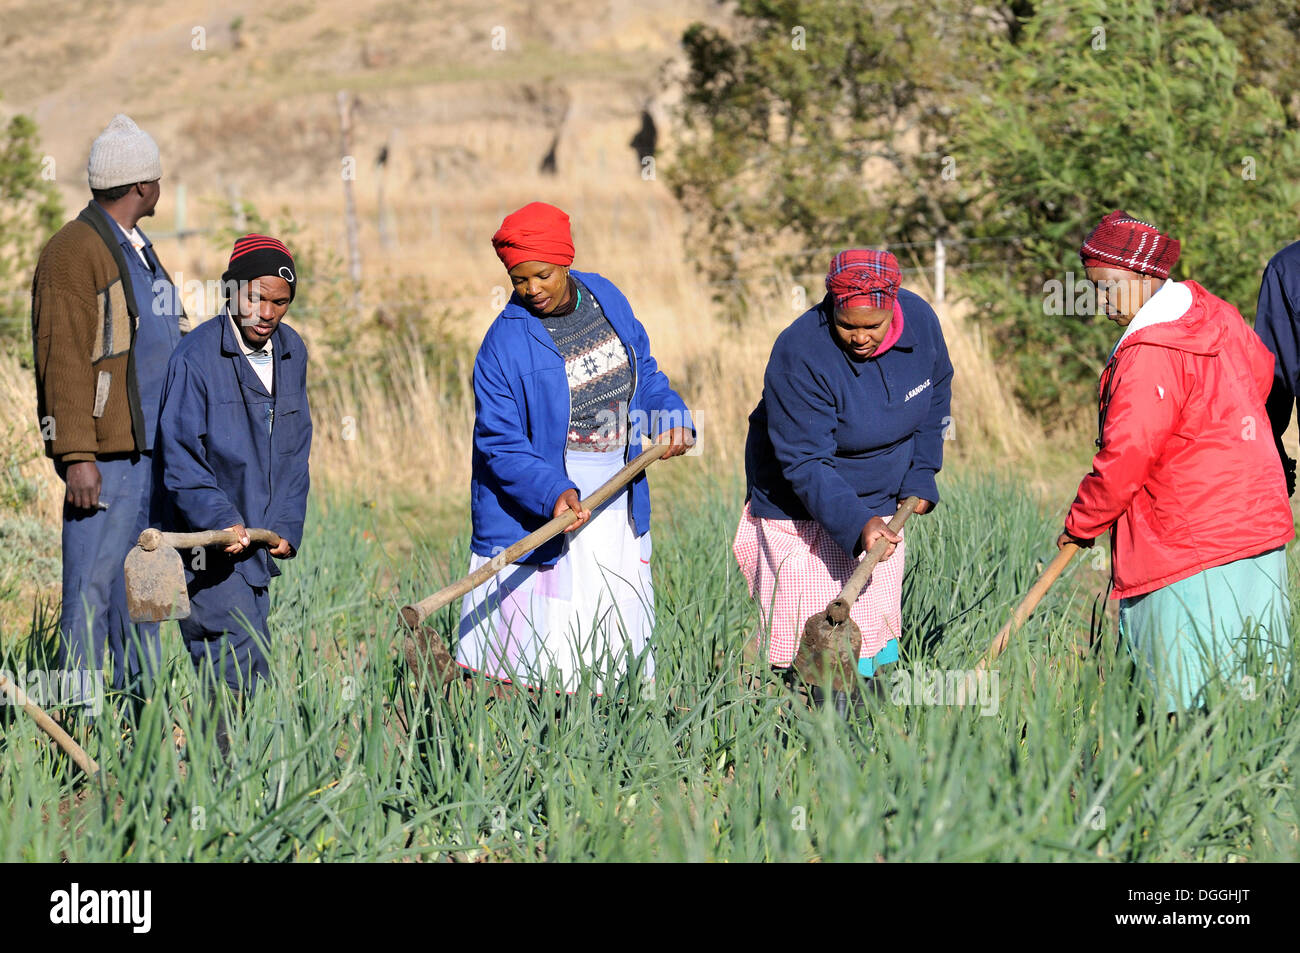 Les femmes et les hommes travaillant dans les champs, les champs irrigués, Cata-Village dans l'ancienne patrie Ciskei, Eastern Cape, Afrique du Sud Banque D'Images